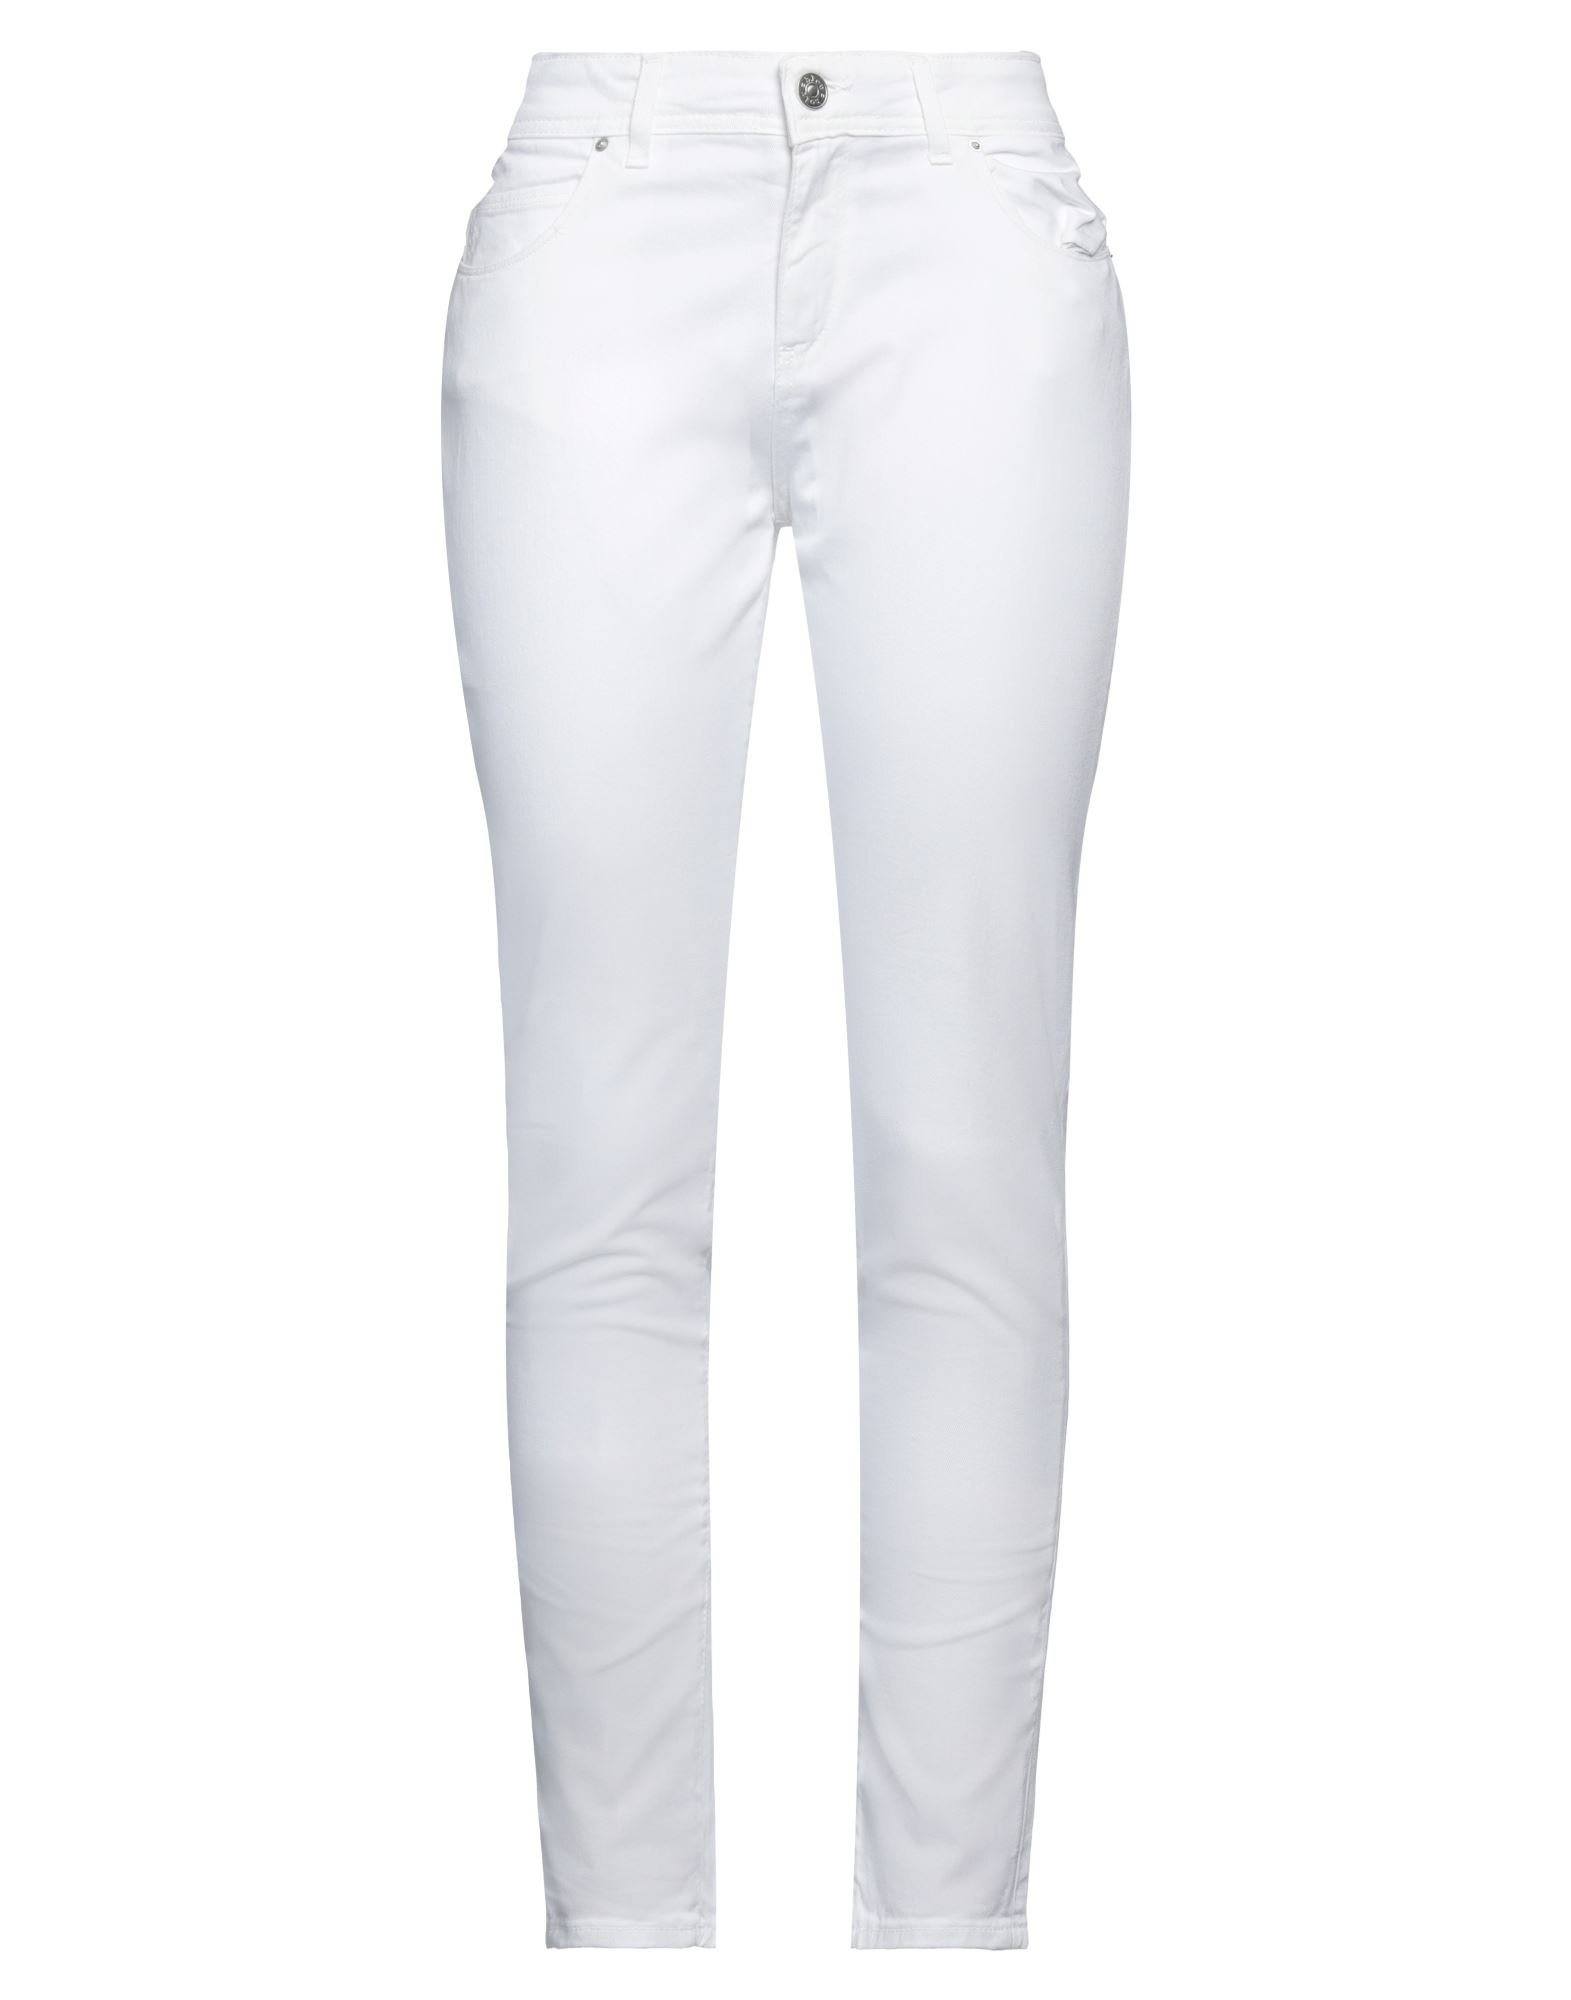 Noir'n'bleu Woman Jeans White Size 30 Cotton, Elastane